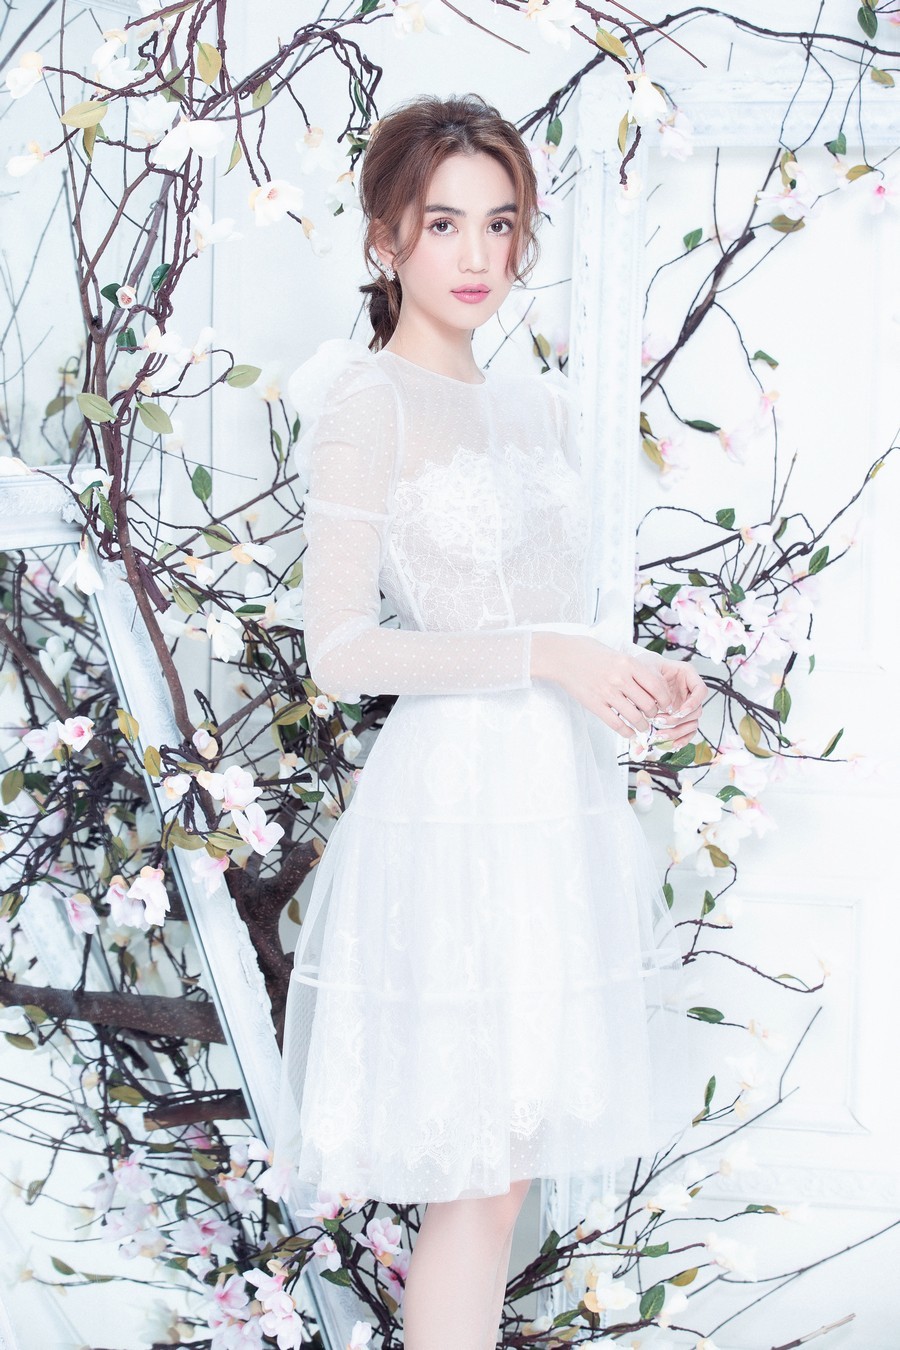  
Mẫu váy trắng cùng background hoa tôn trọn vẻ tinh khôi, bay bổng của chân dài Trà Vinh. (Ảnh: NVCC)